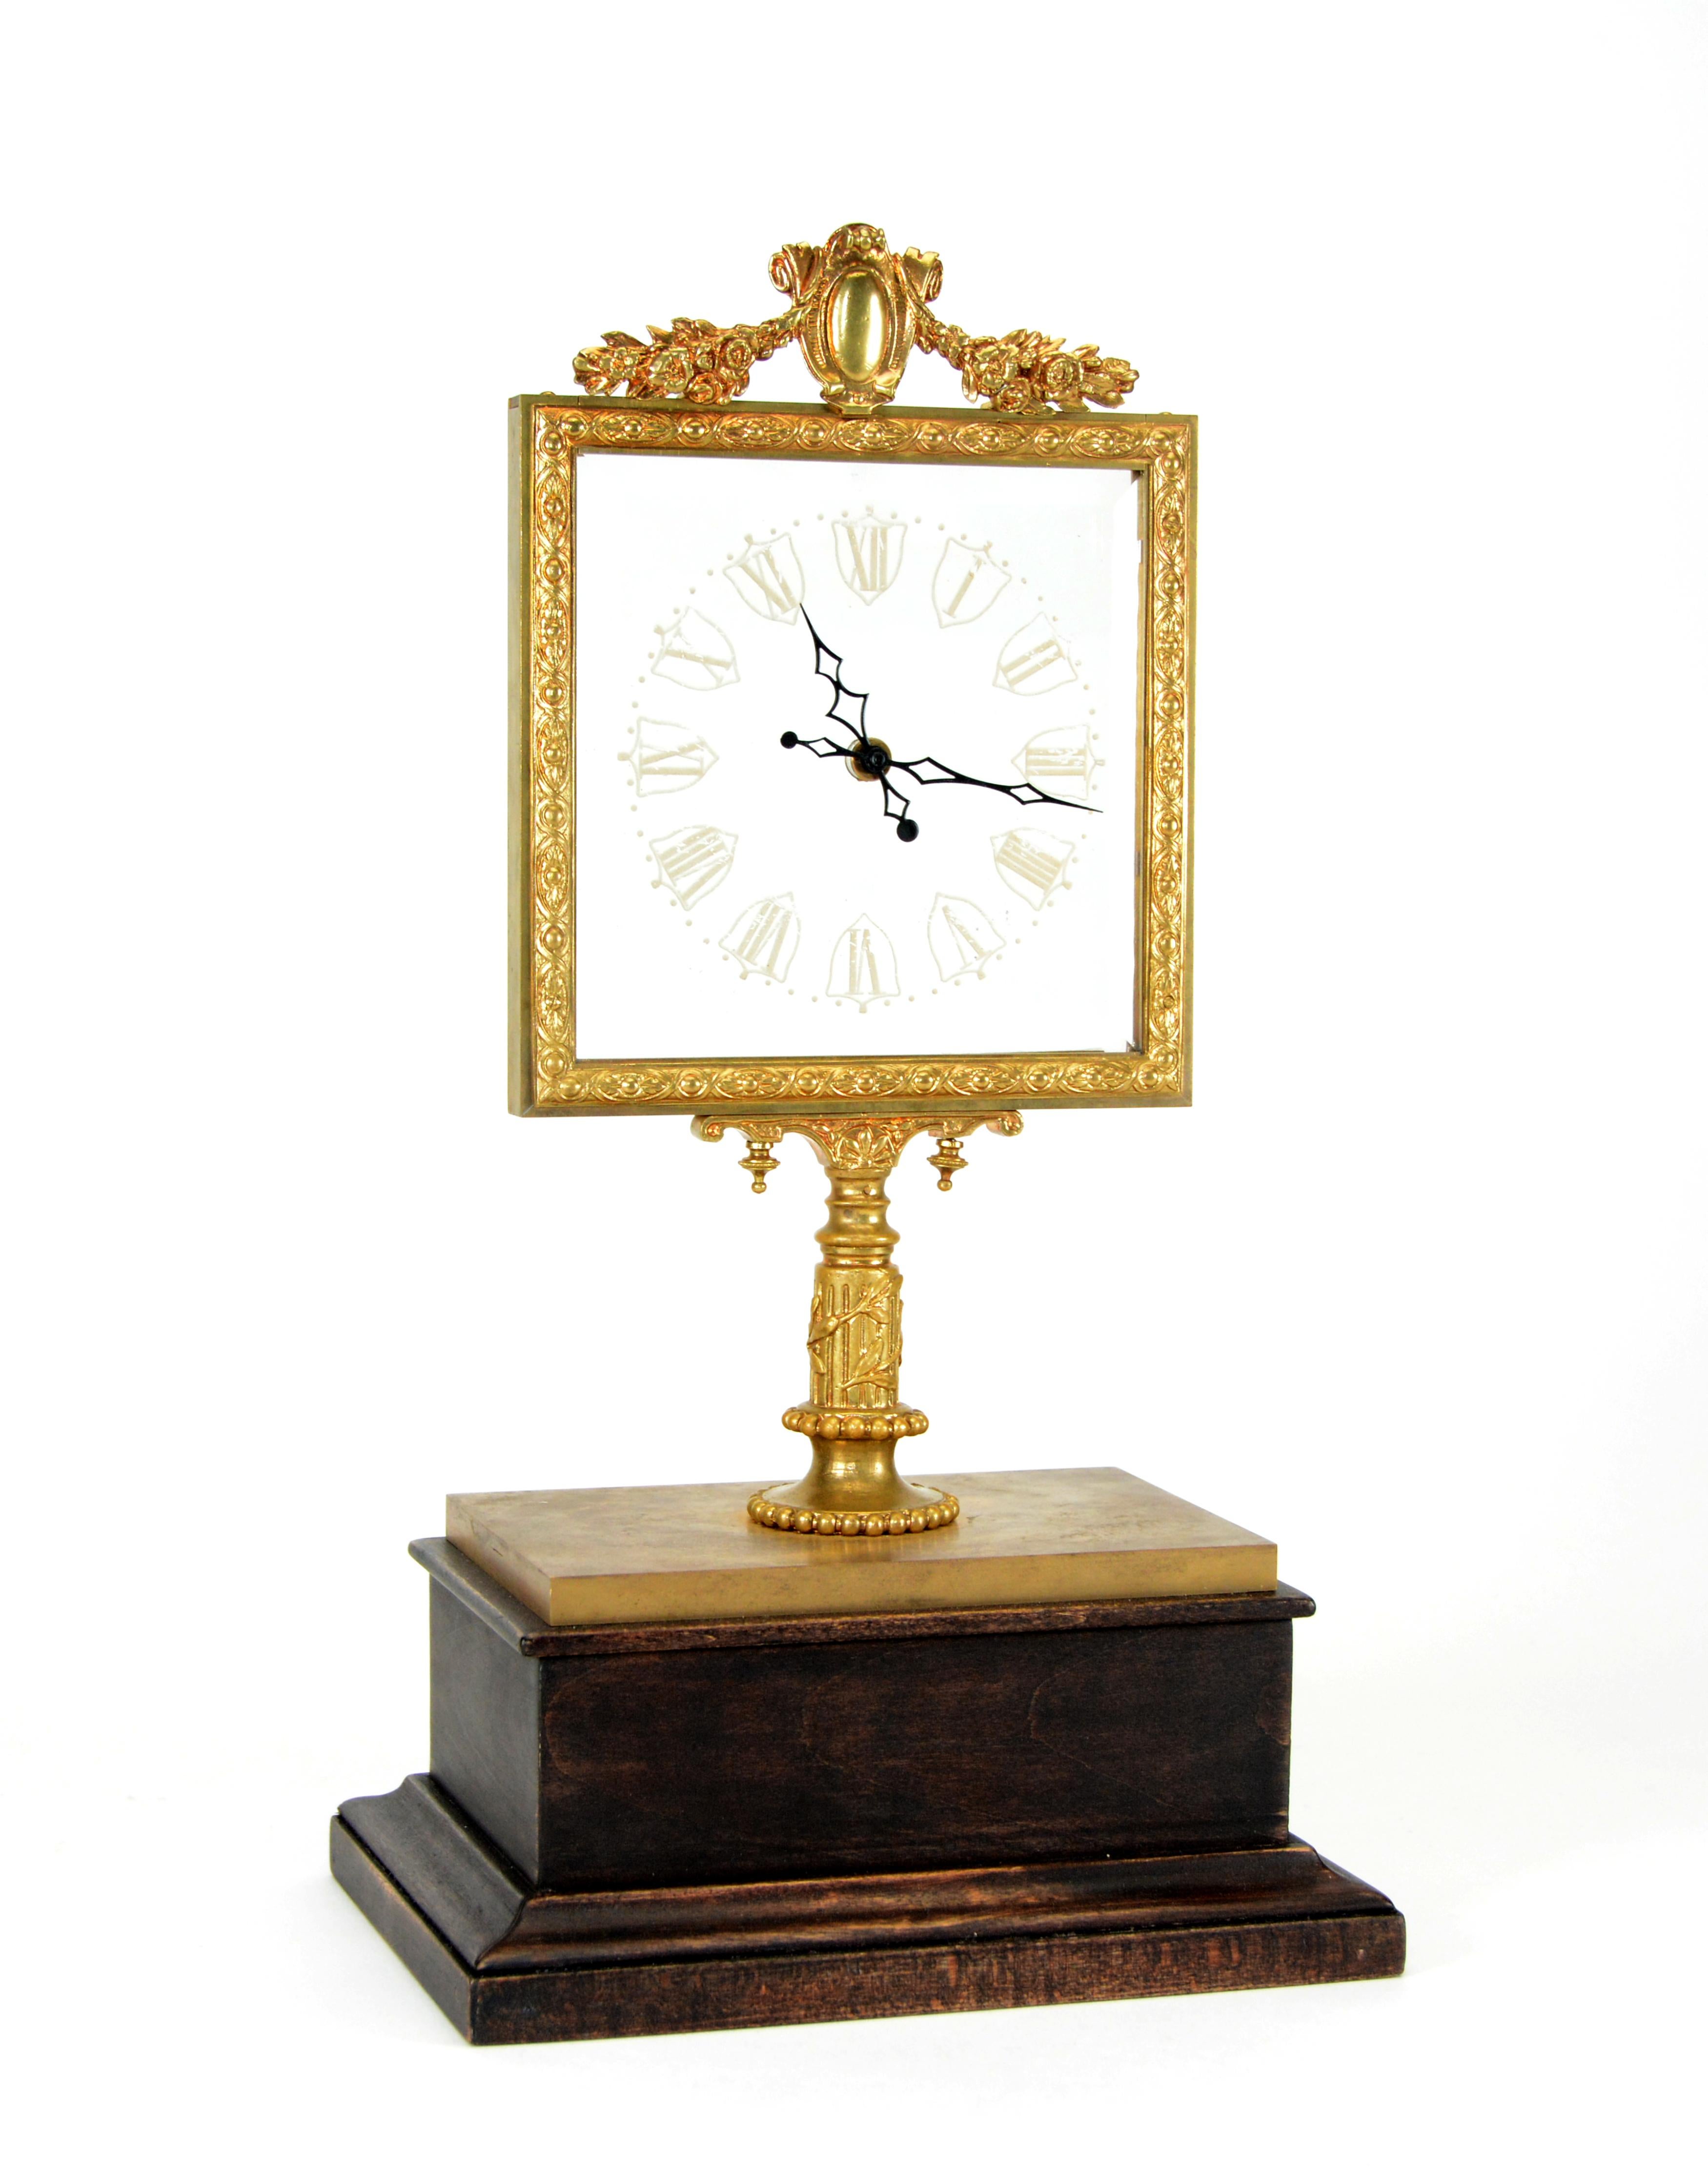 Une horloge mystérieuse rare, attribuée au célèbre magicien et mécanicien français, Jean Robert-Houdin. Cette horloge mécanique totale possède un grand cadran carré en verre très voyant, avec 2 aiguilles indiquant l'heure en chiffres romains. Le